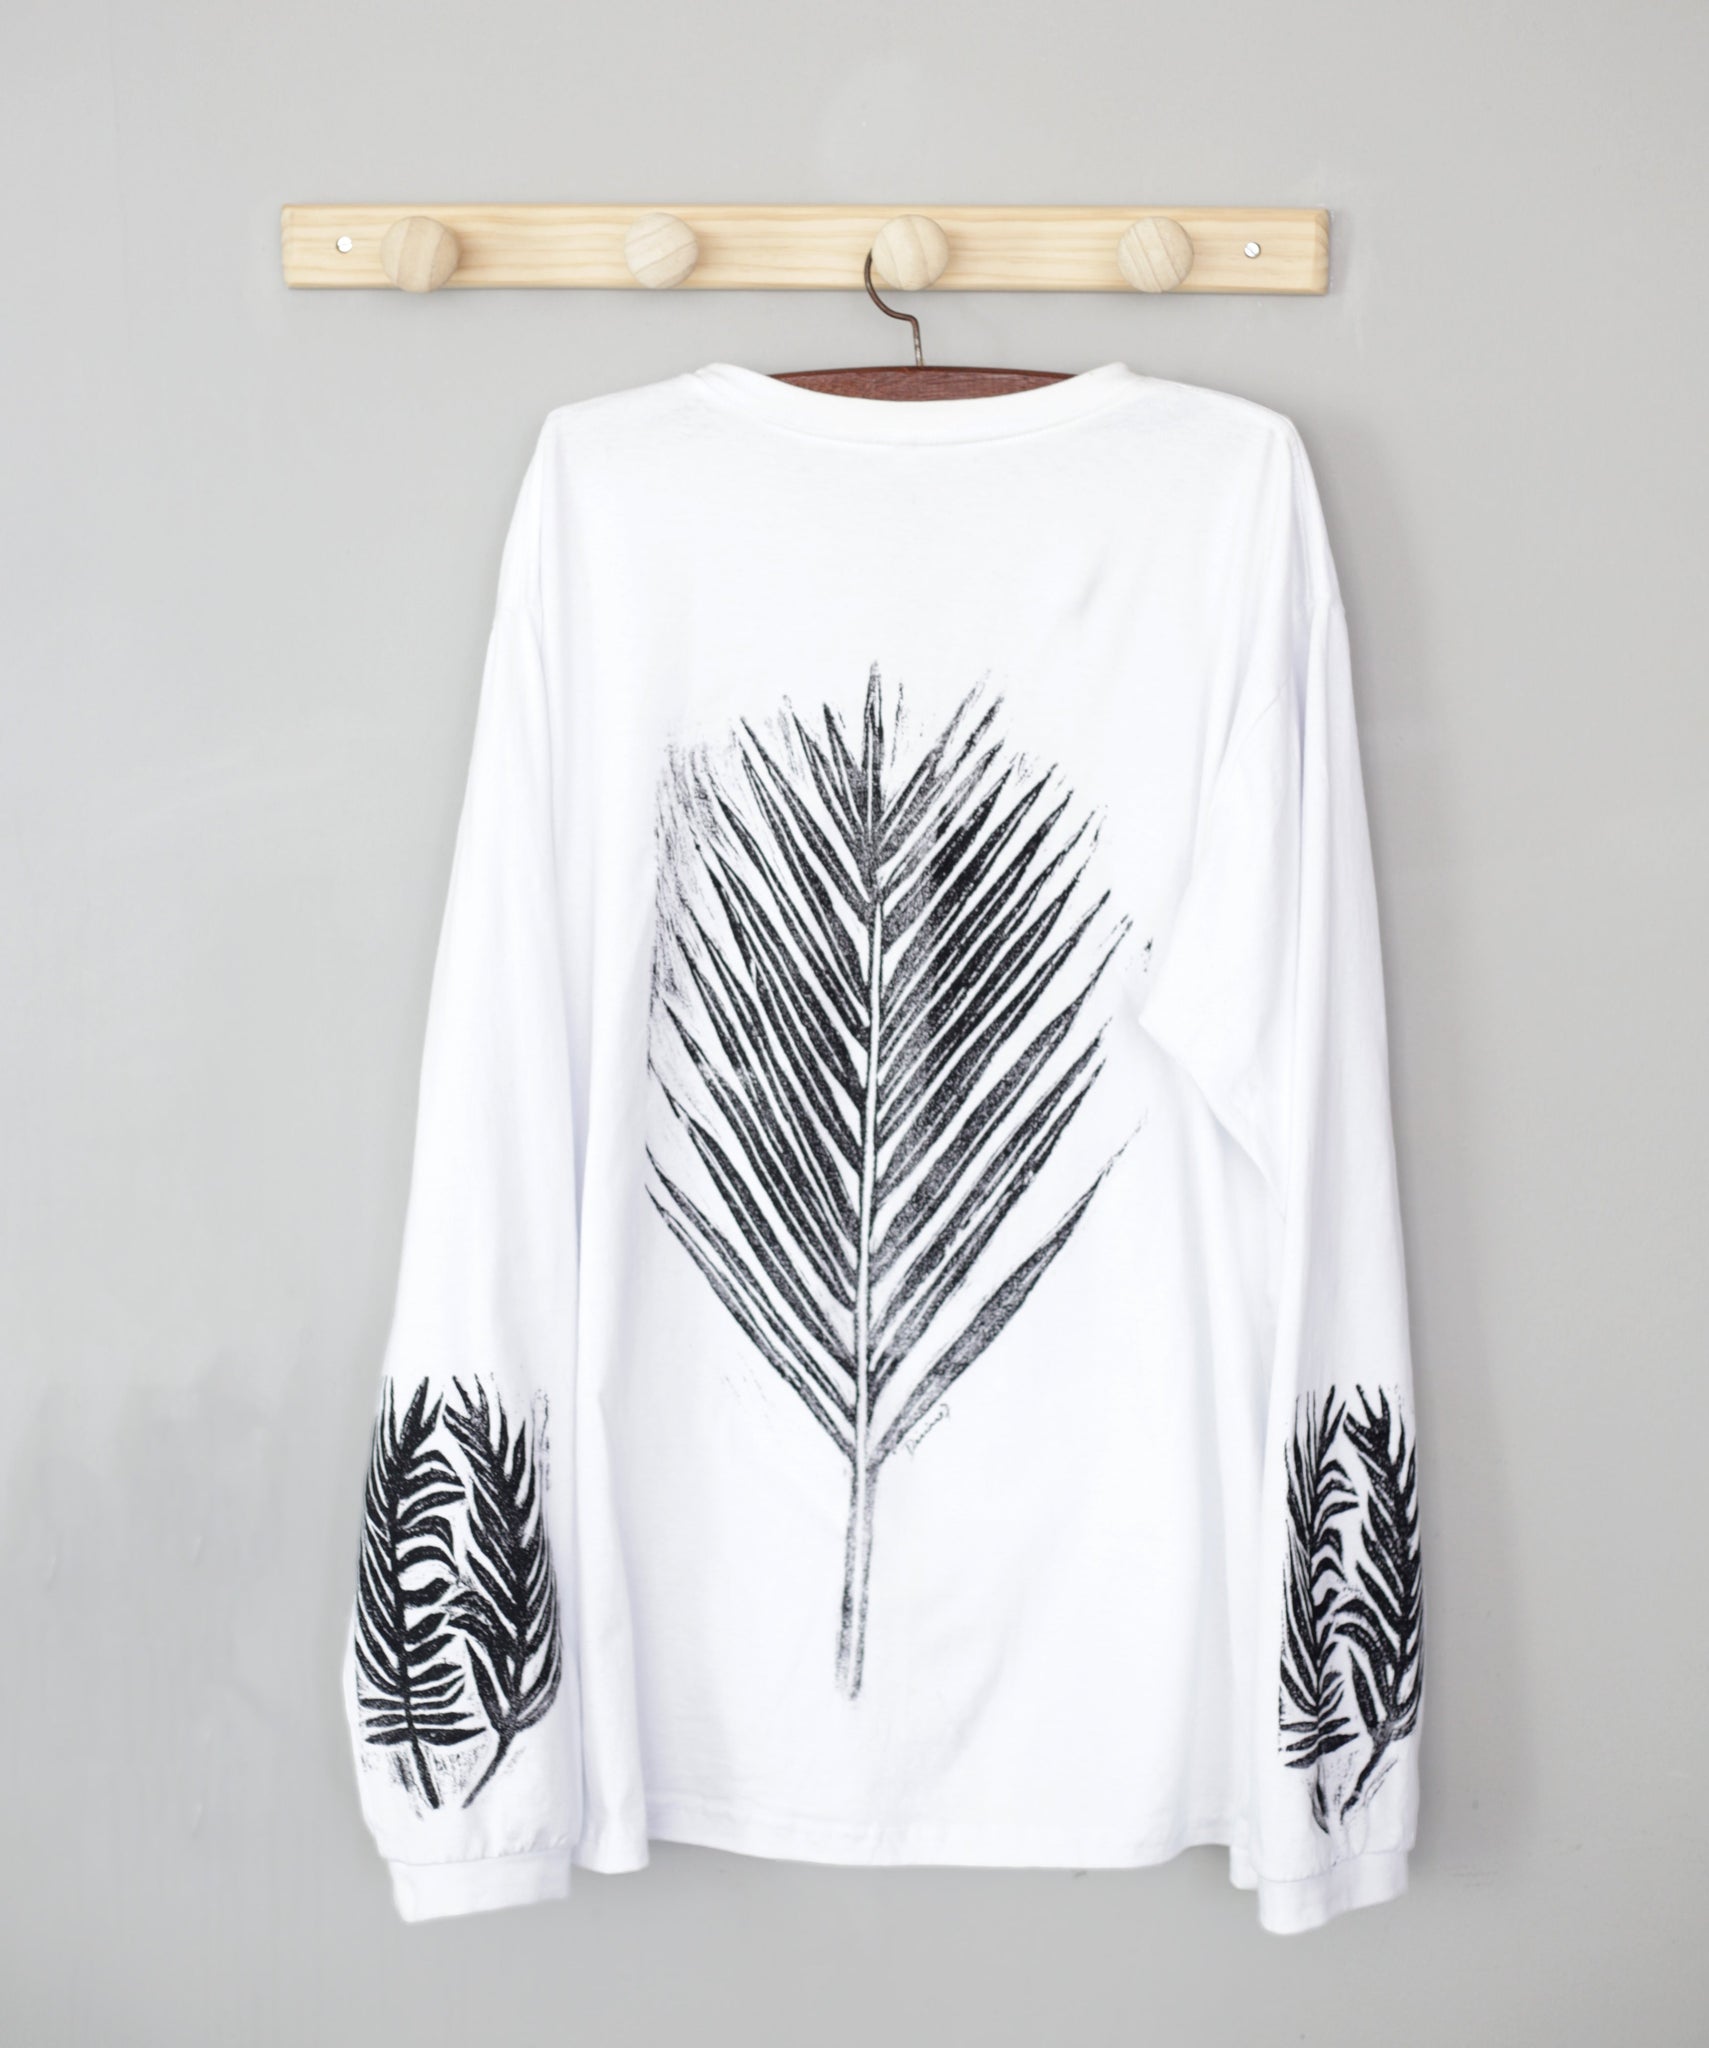 Camisa Palmeira Triunfo - preto no branco